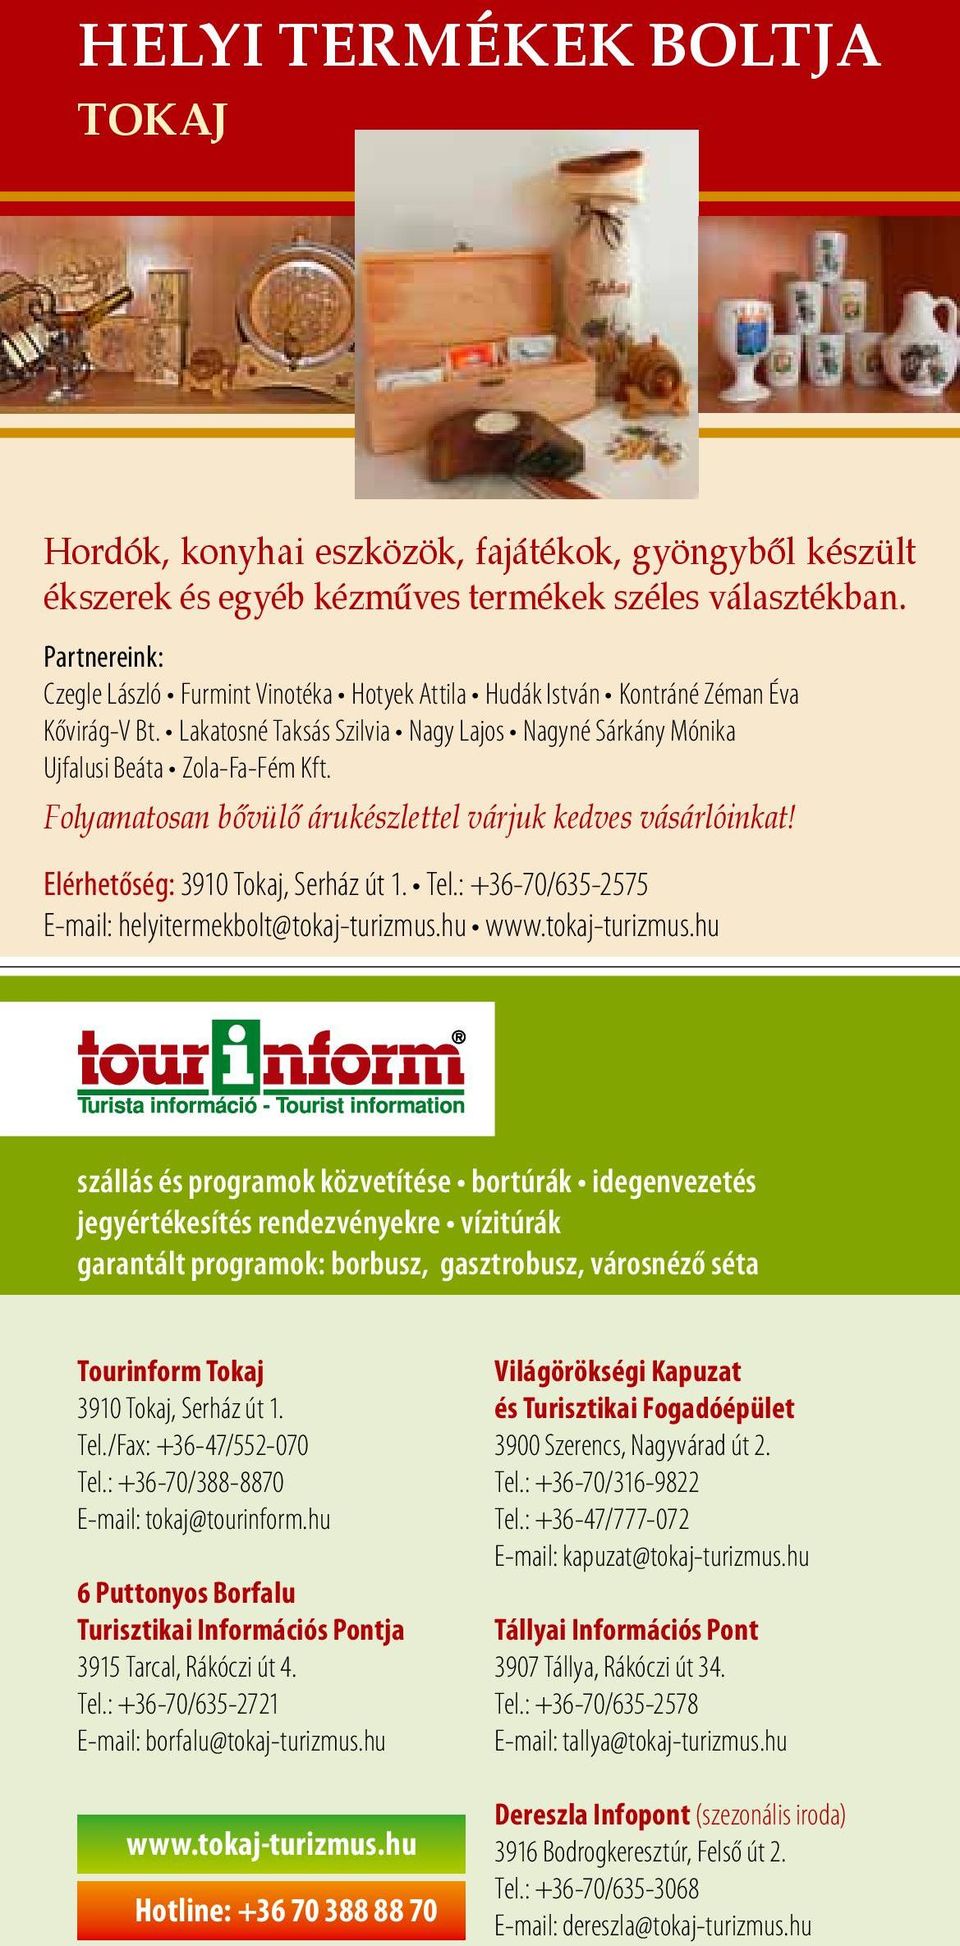 an bővülő árukészlettel várjuk kedves vásárlóinkat! Elérhetőség: 3910 Tokaj, Serház út 1. Tel.: +36-70/635-2575 E-mail: helyitermekbolt@tokaj-turizmus.